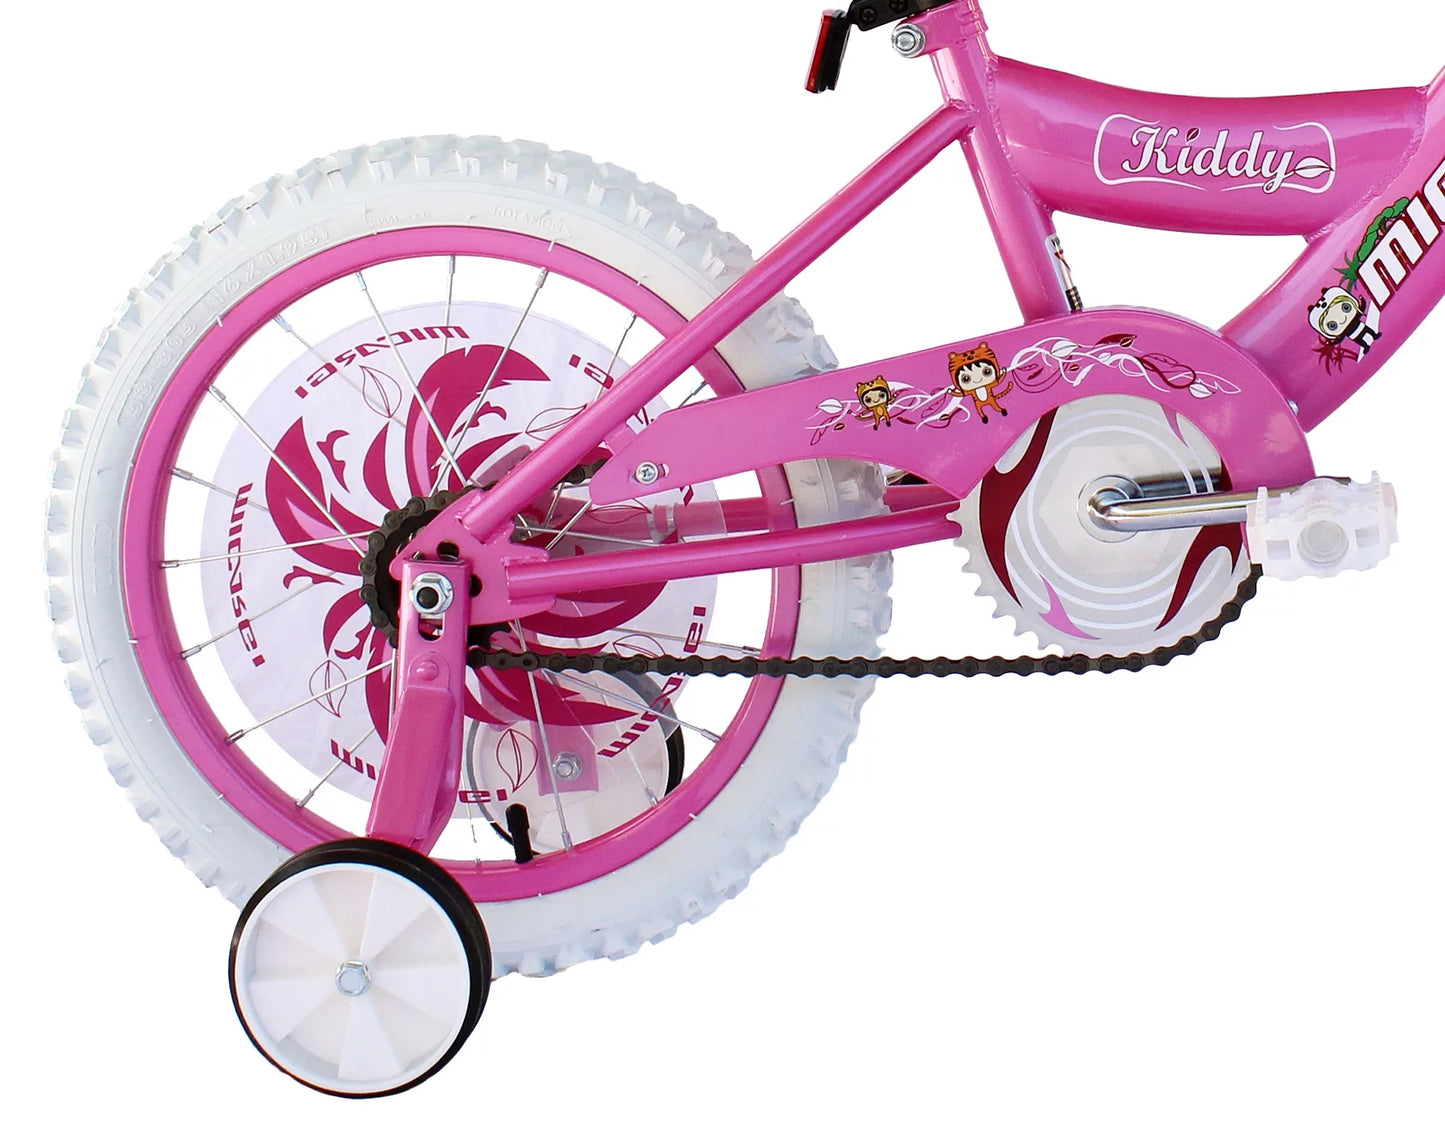 16 In. Kiddy Kids Bike, Pink